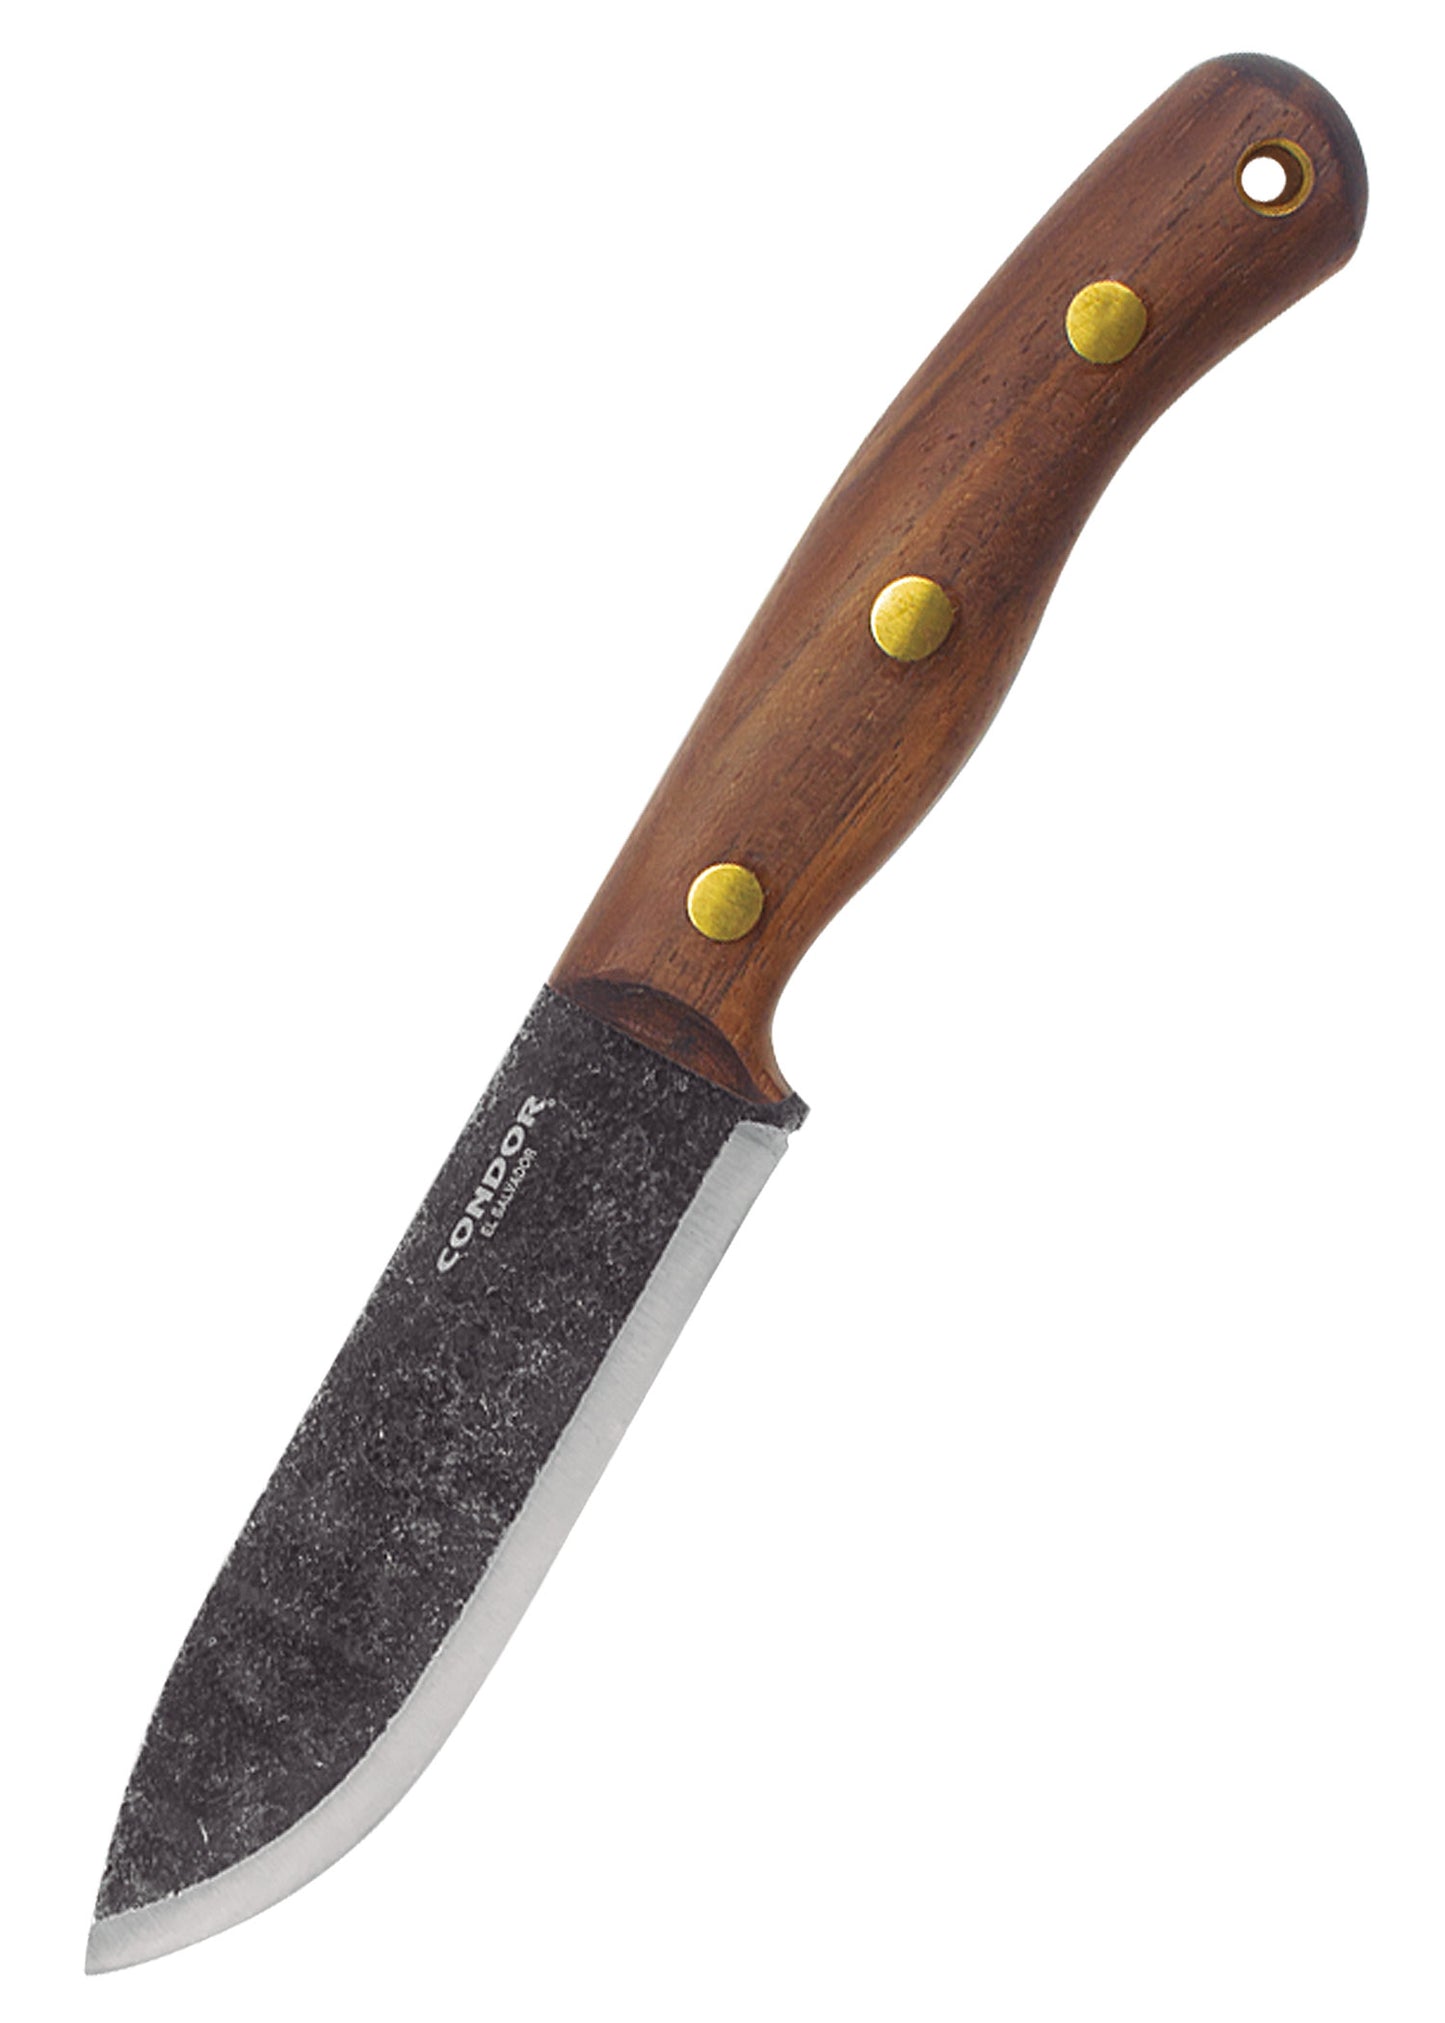 Couteau à lame fixe Bisonte - Condor-T.A DEFENSE